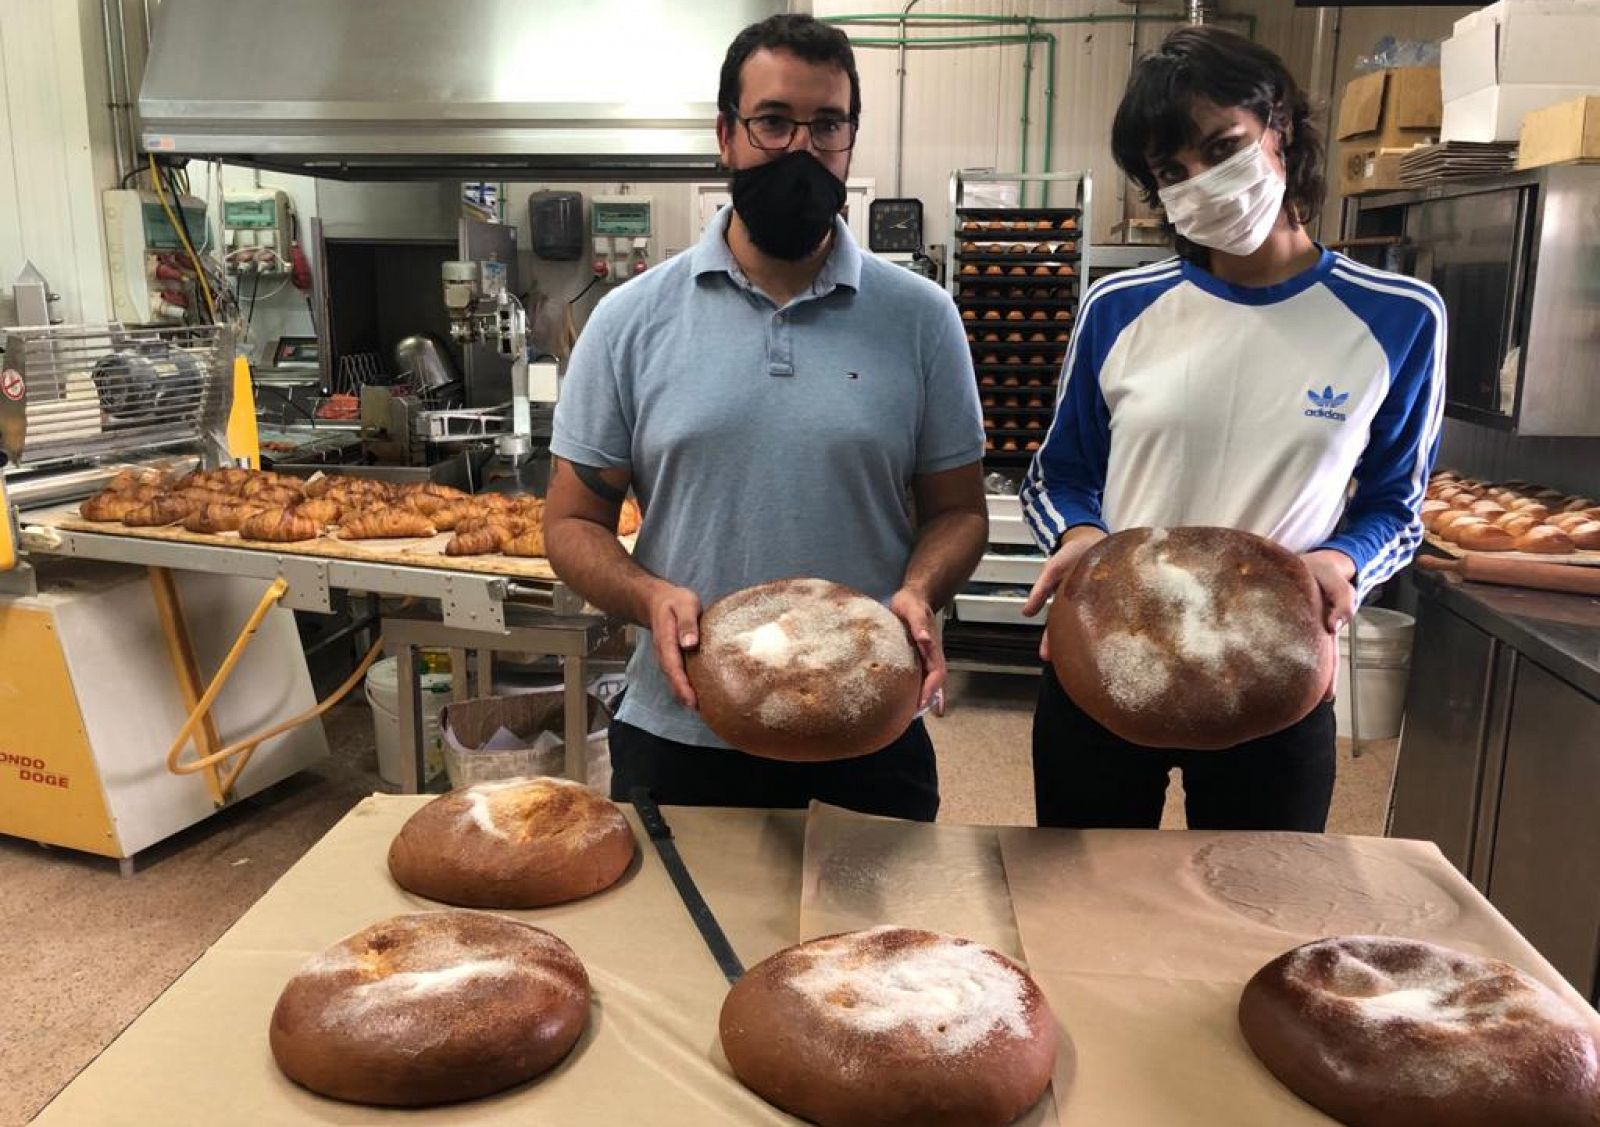 La herencia del pan dulce del municipio de Segovia 